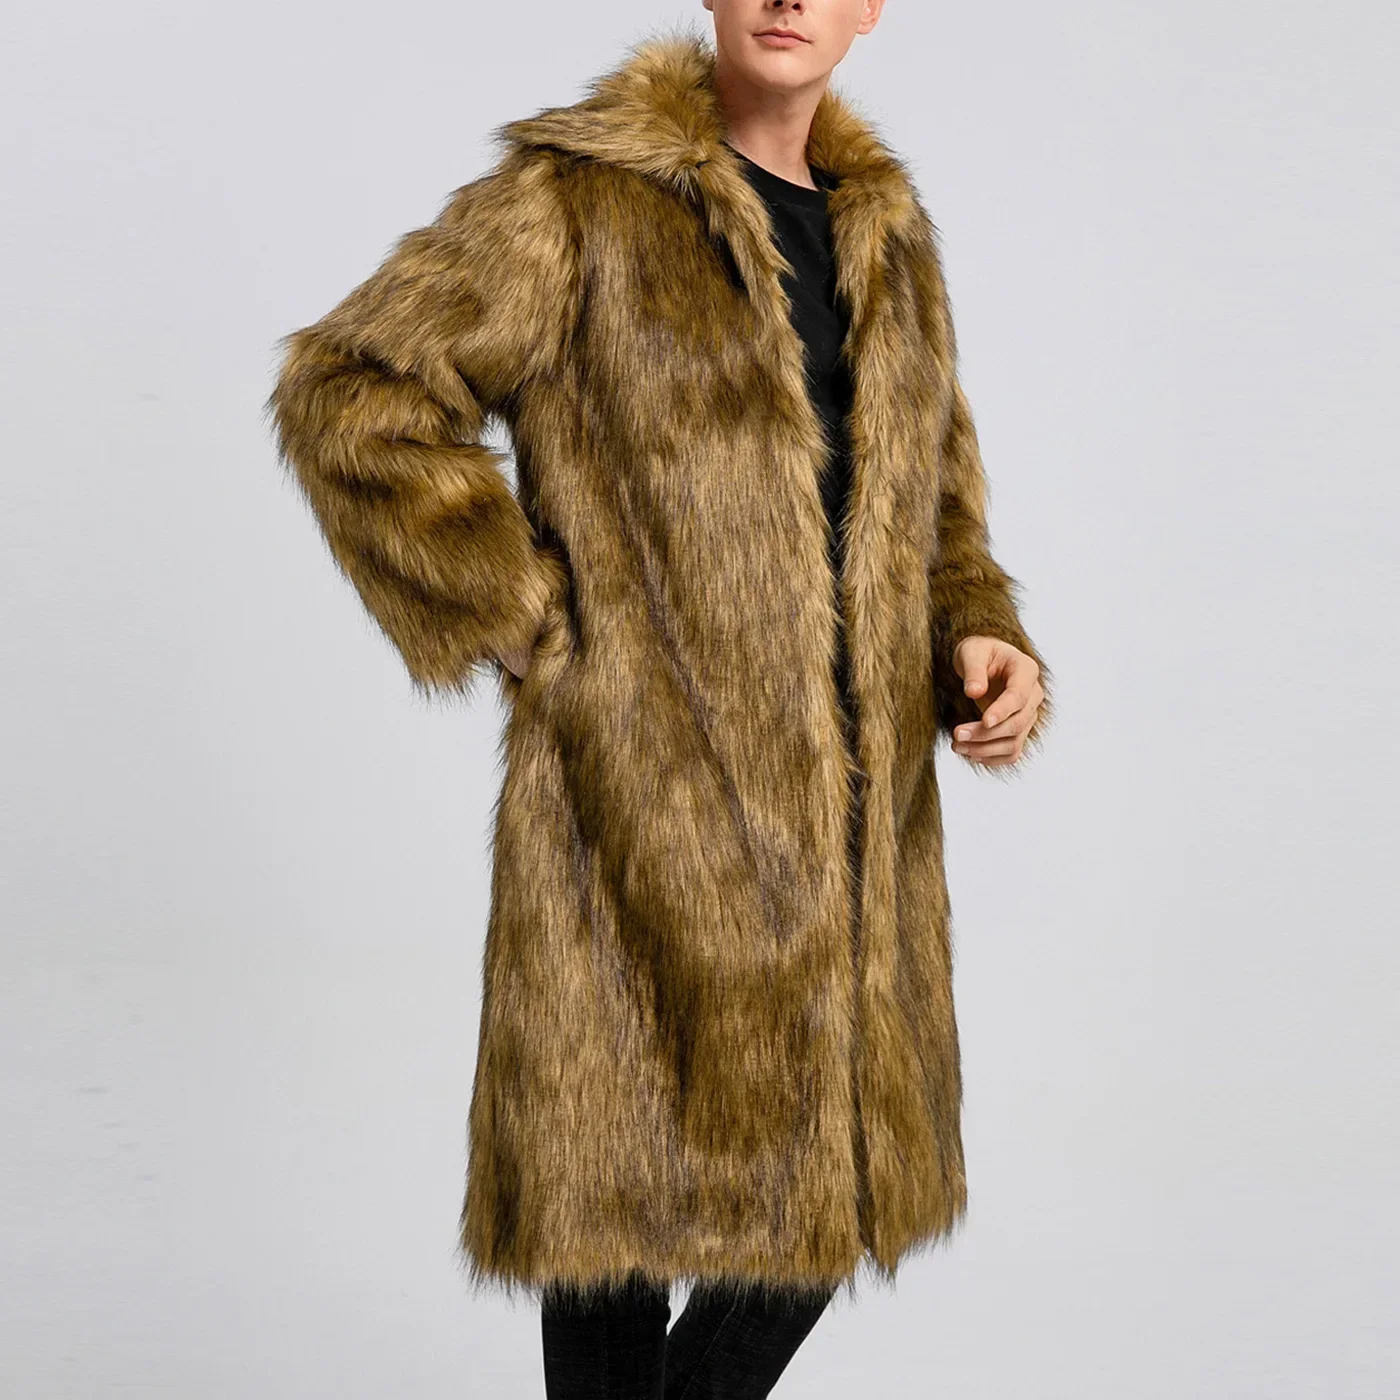 

Men Faux Fox Fur Jacket Coat Winter Warm Thick Fluffy Long Sleeve Shaggy Outerwear Luxury Fur Long Jacket Bontjas Jackets Mens